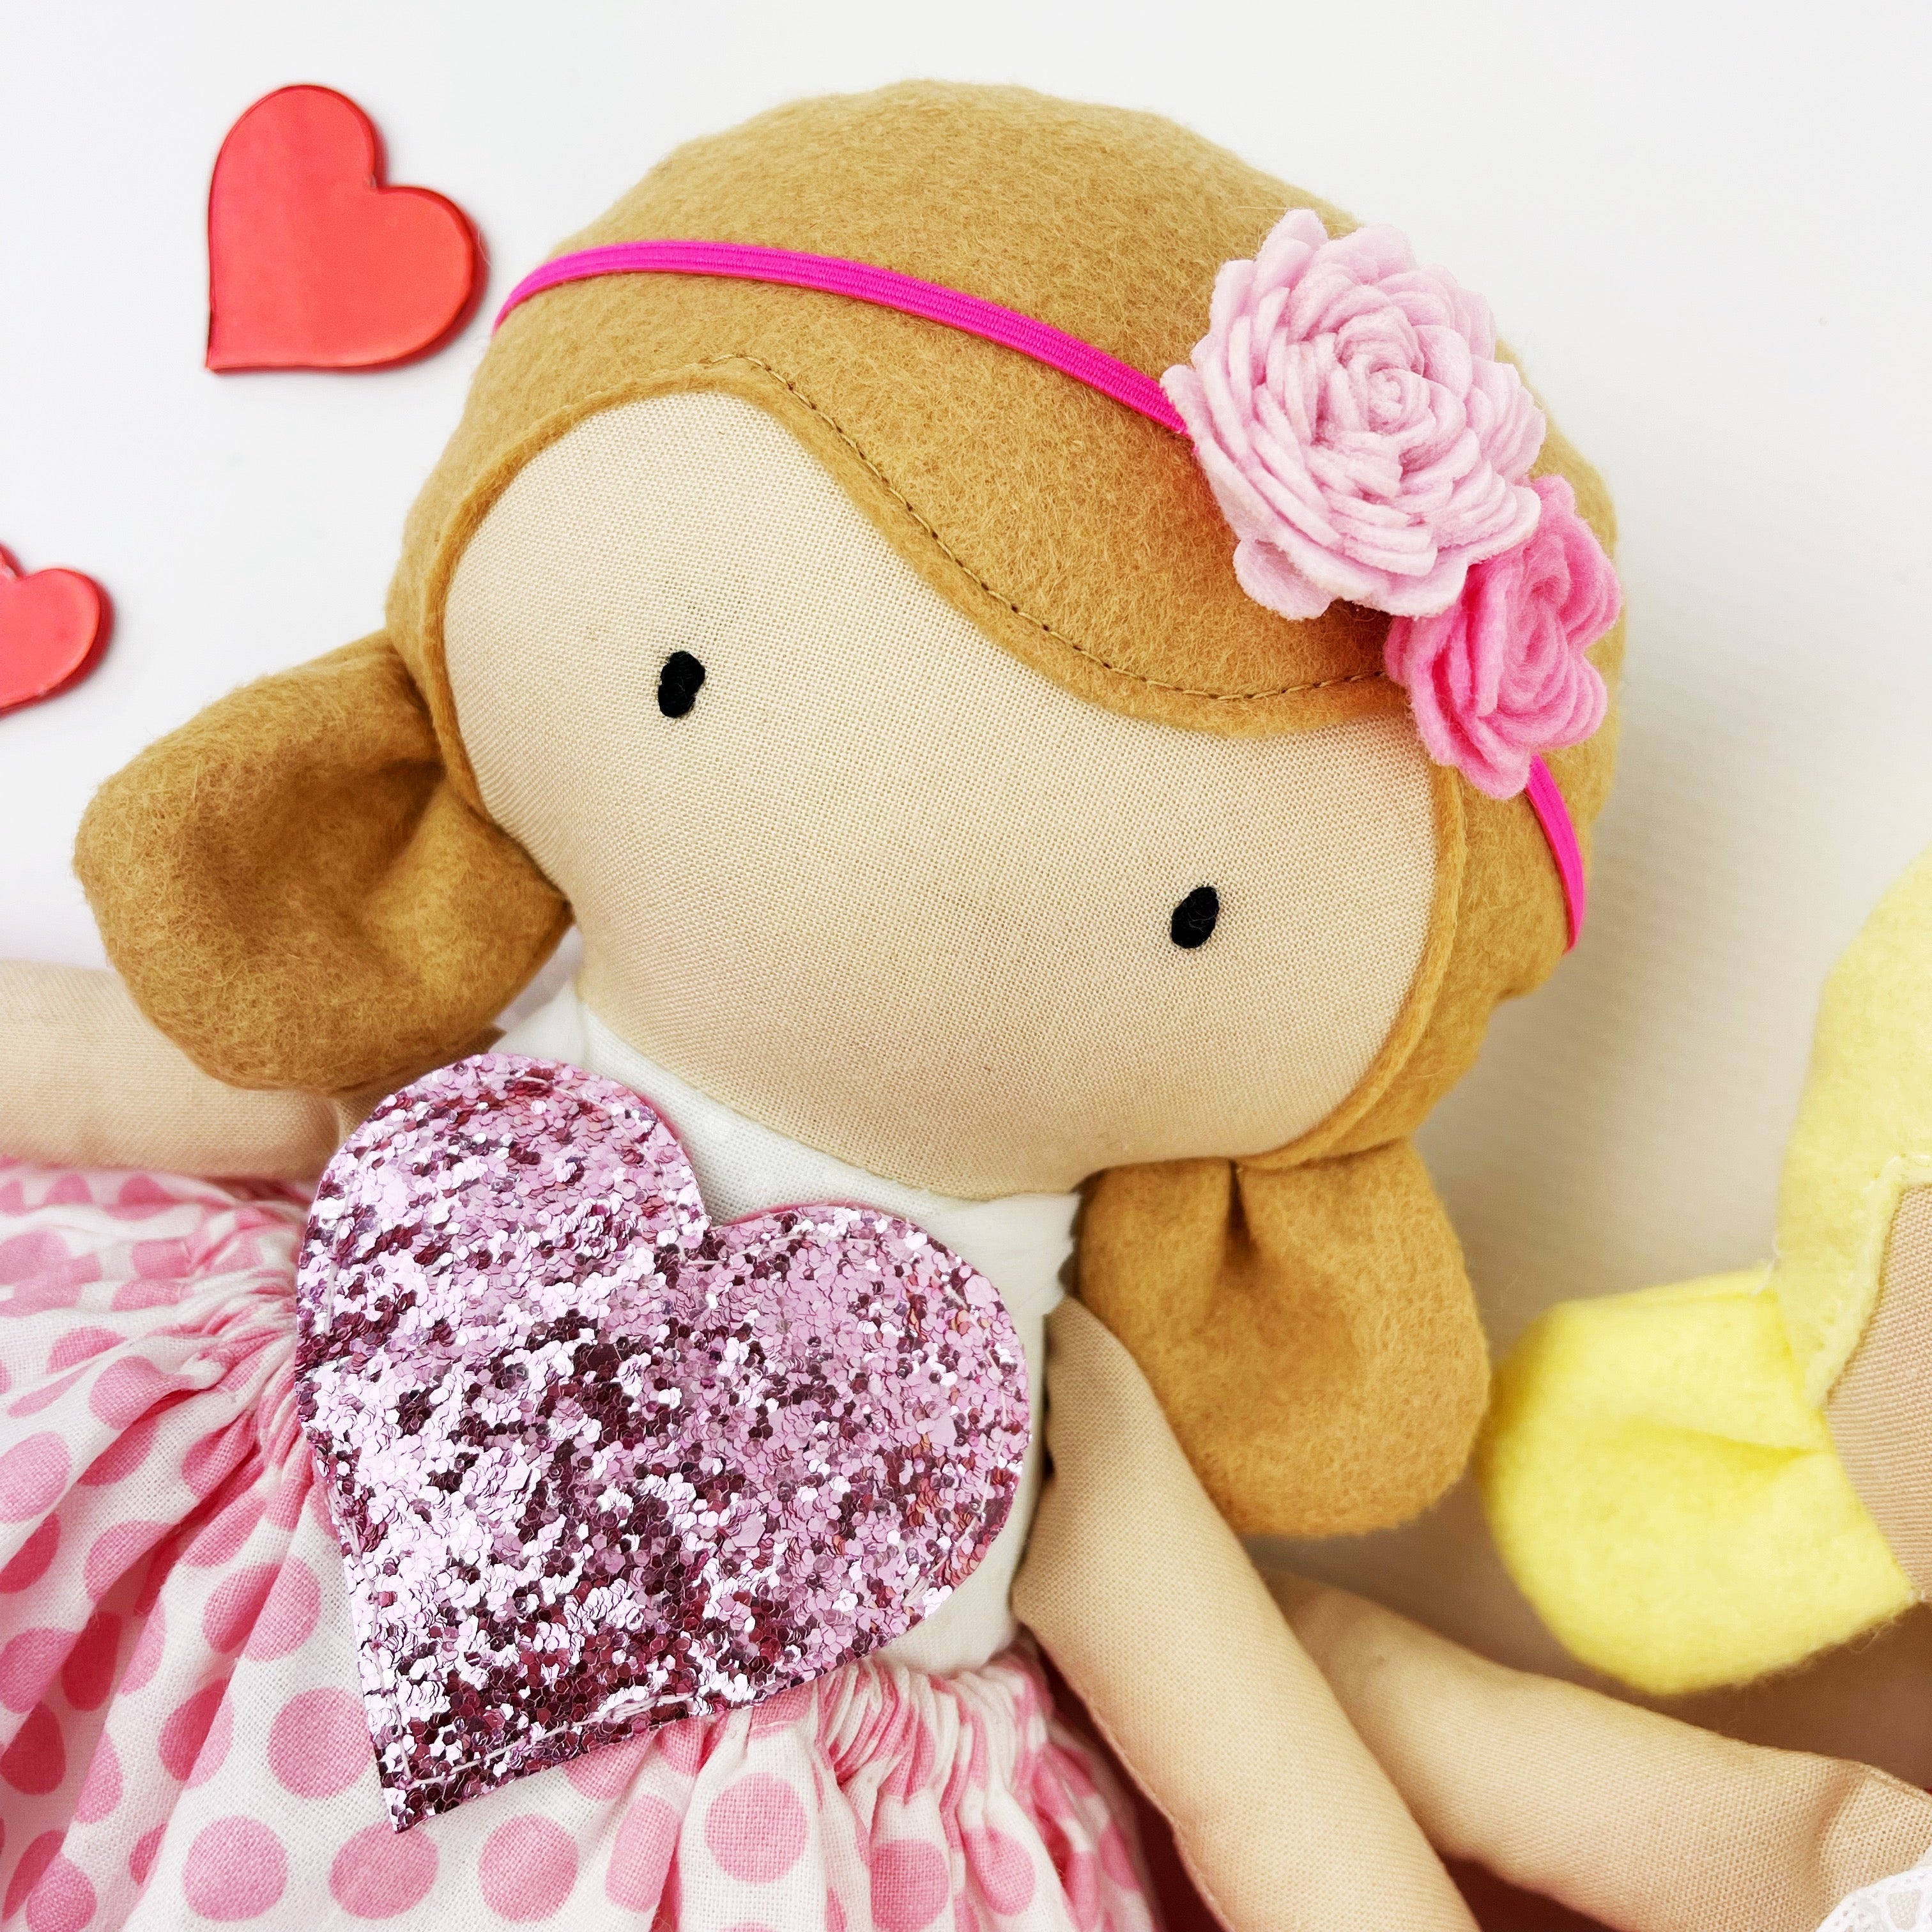 Mini Pal 14" doll Valentines heart dress - FREE